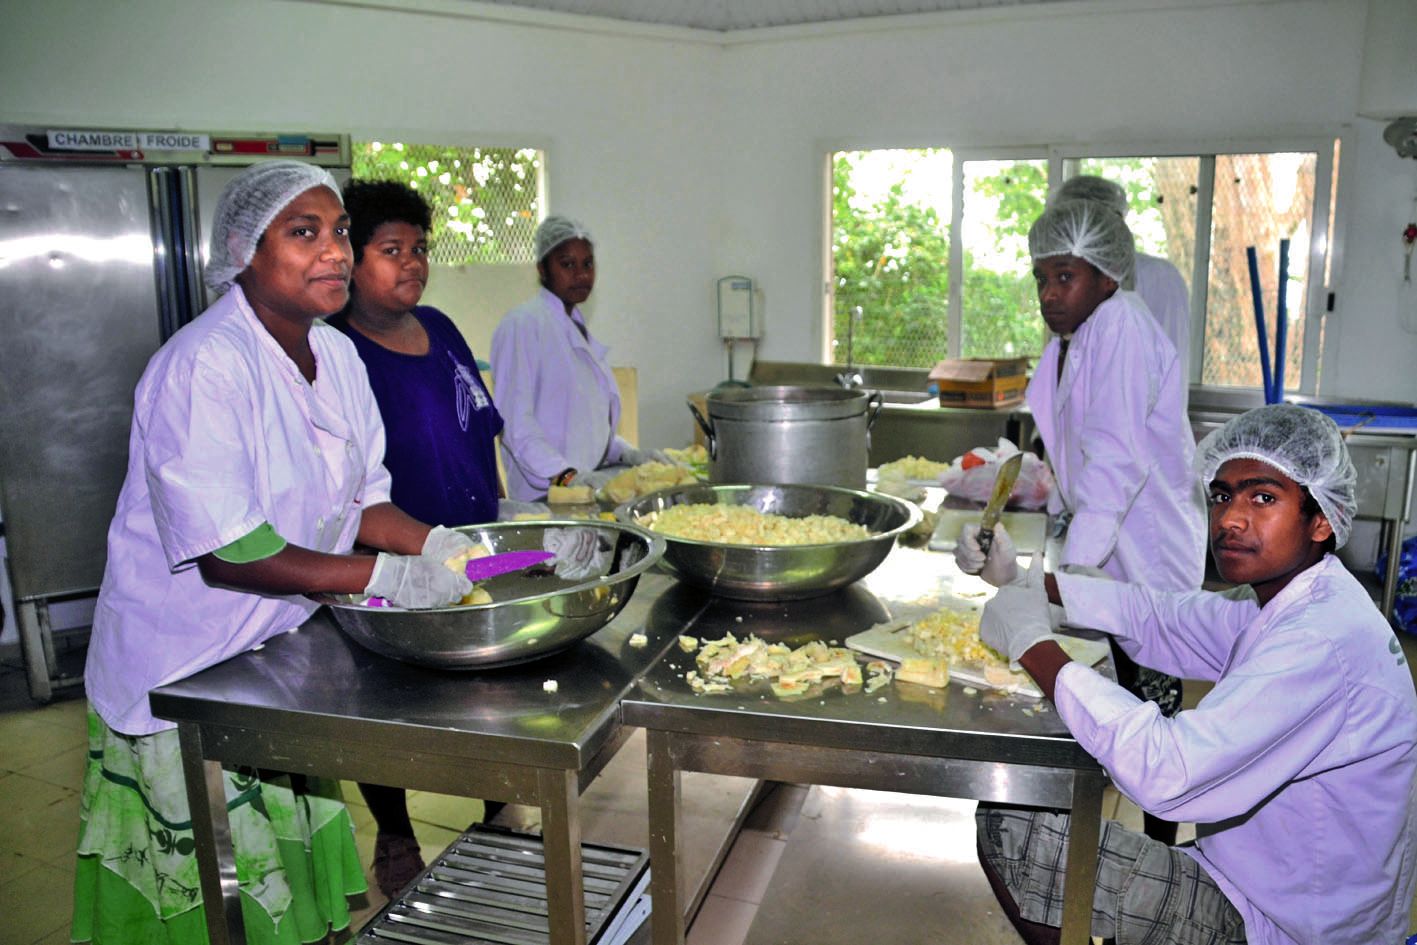 En cuisine, pour profiter pleinement des cultures, « on coupe du manioc, indique Richard (à droite), pour faire une salade ».  Elle sera préparée au lait de coco, comme une salade de poisson.